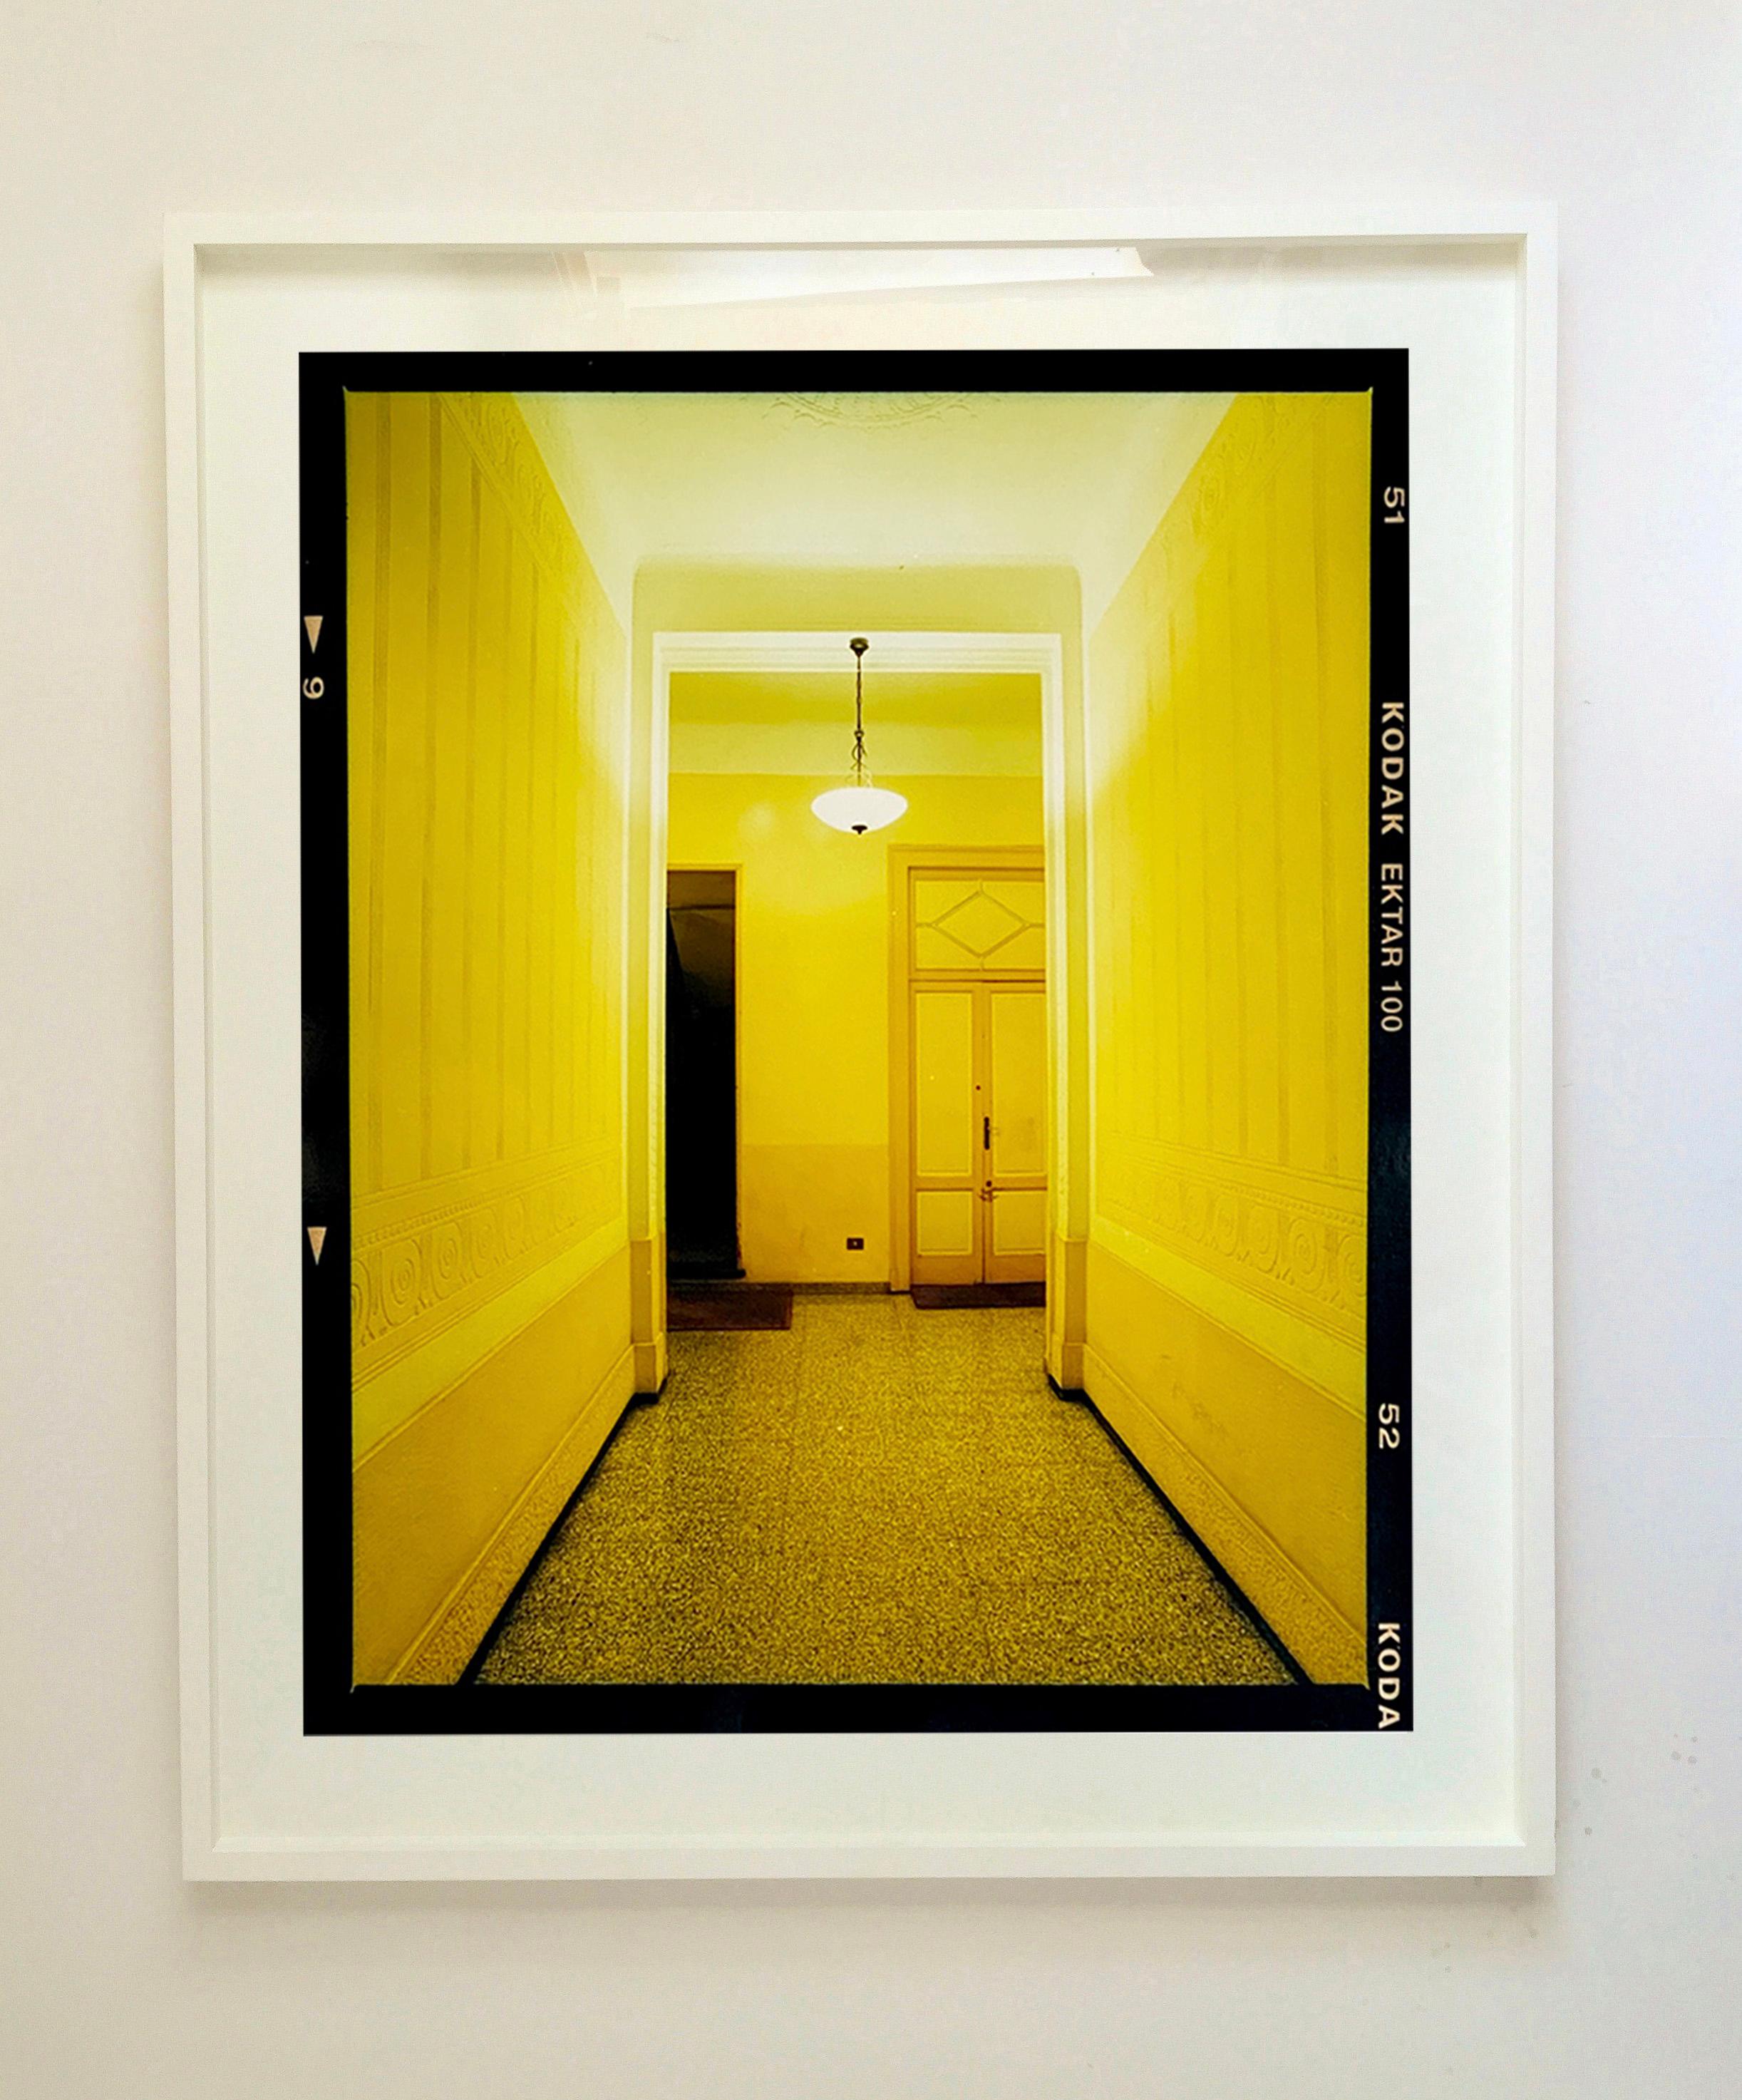 Yellow Corridor (Night), aus Richard Heeps Serie A Short History of Milan, die als Sonderprojekt für die Affordable Art Fair Milan 2018 entstand. Es wurde gut aufgenommen, und das Kunstwerk ist bei Kunstkäufern auf der ganzen Welt beliebt geworden.